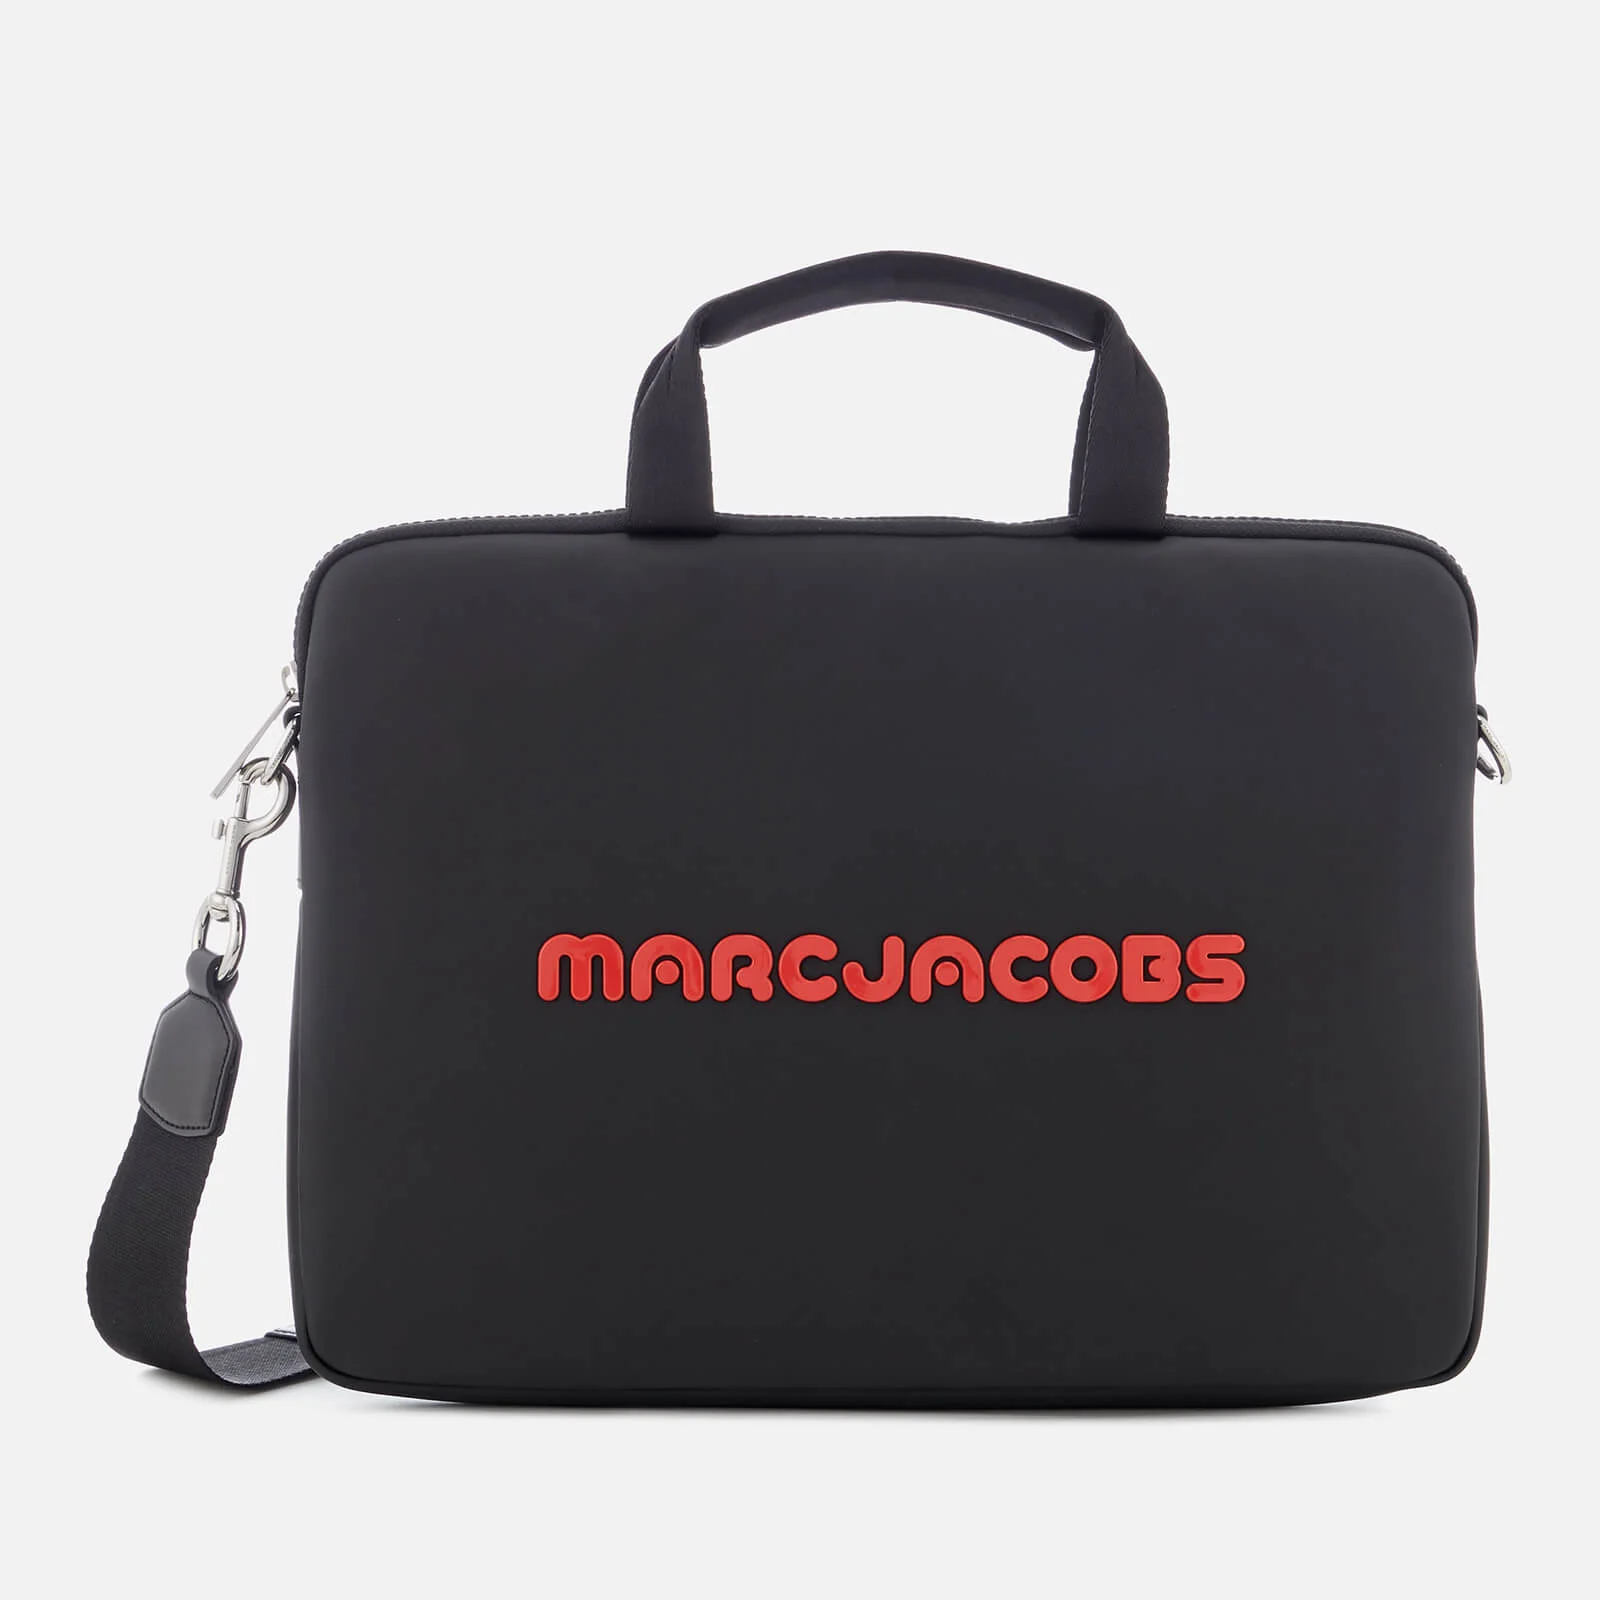 Marc Jacobs Women's 13 Inch Commuter Laptop Case - Black Image 1